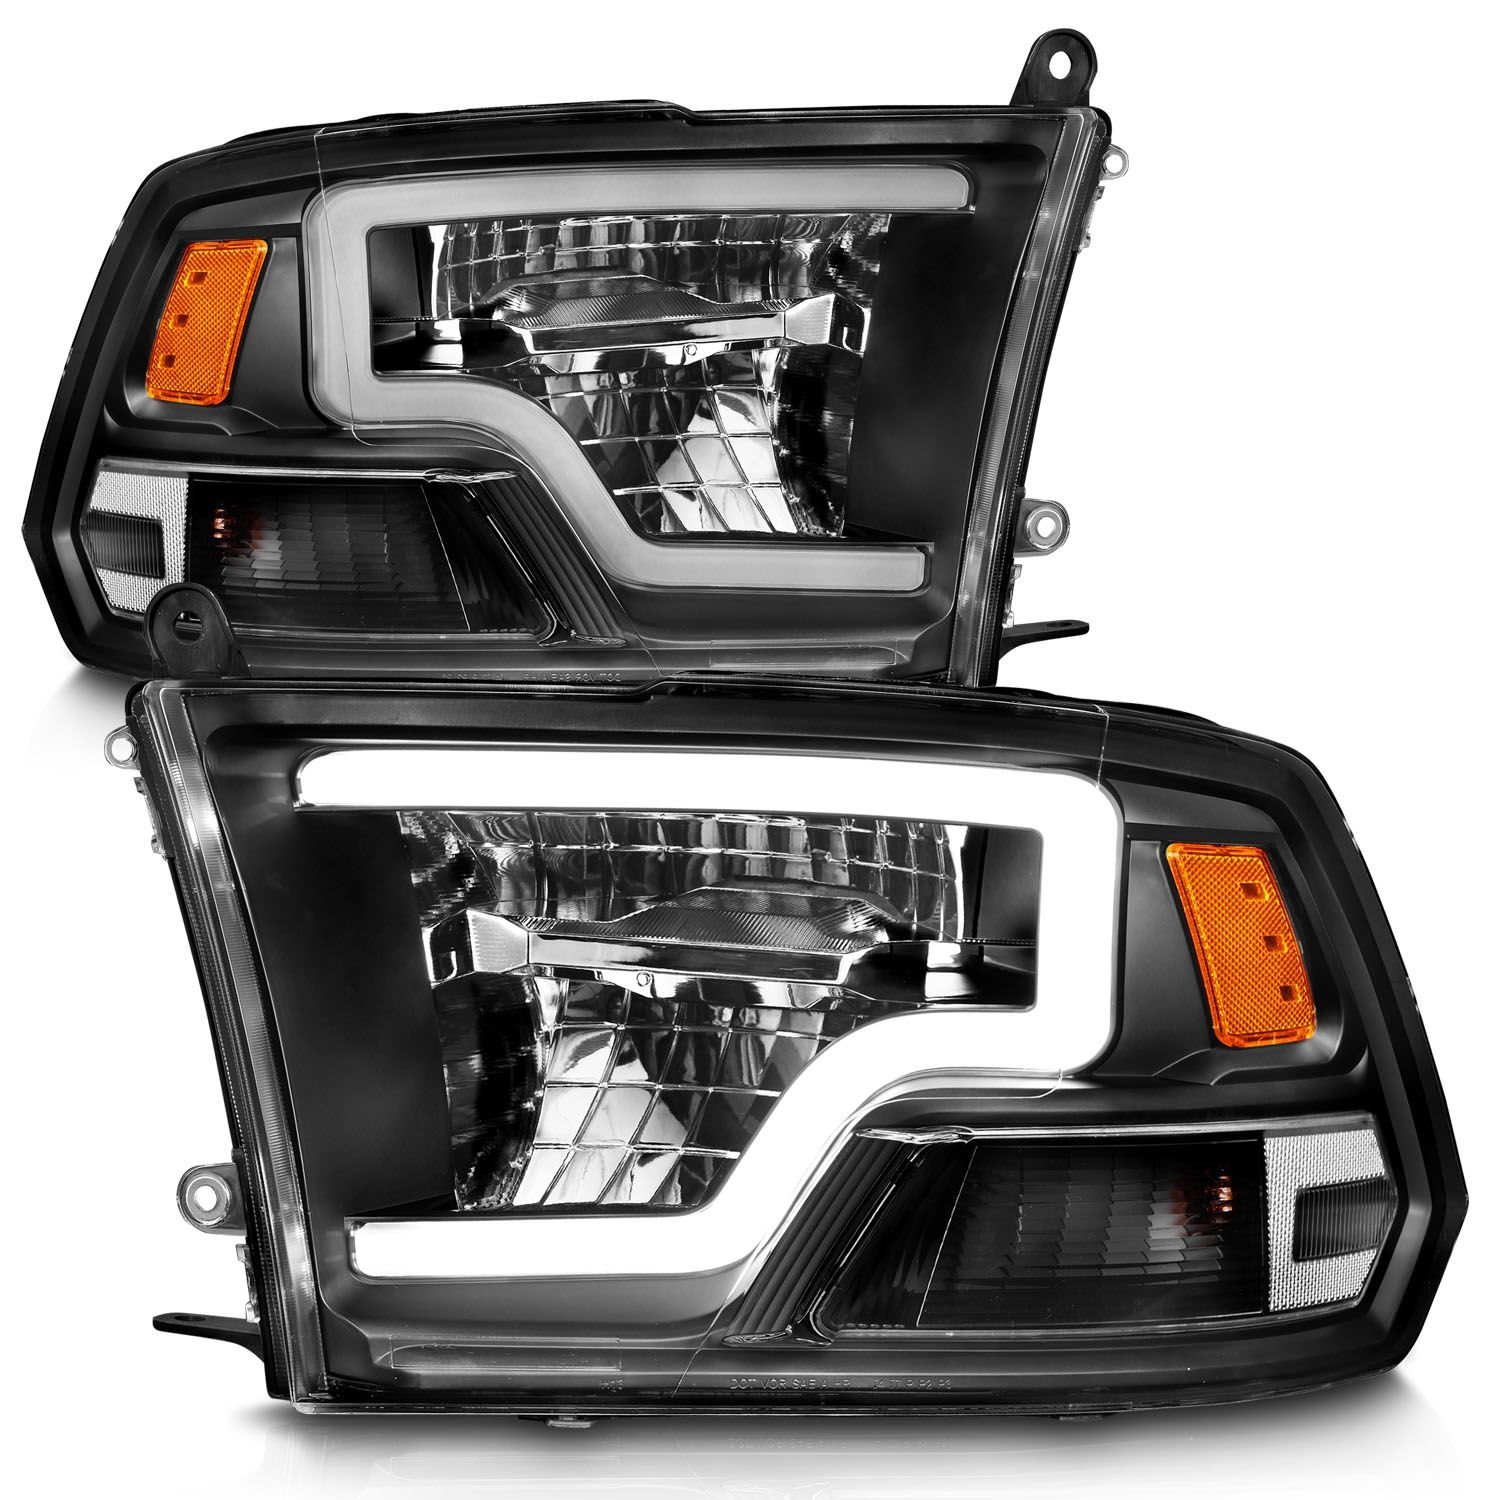 LED Black Housing Headlights for Select 2009-2020 Ram 1500/2500/3500 Trucks [Light Bar]